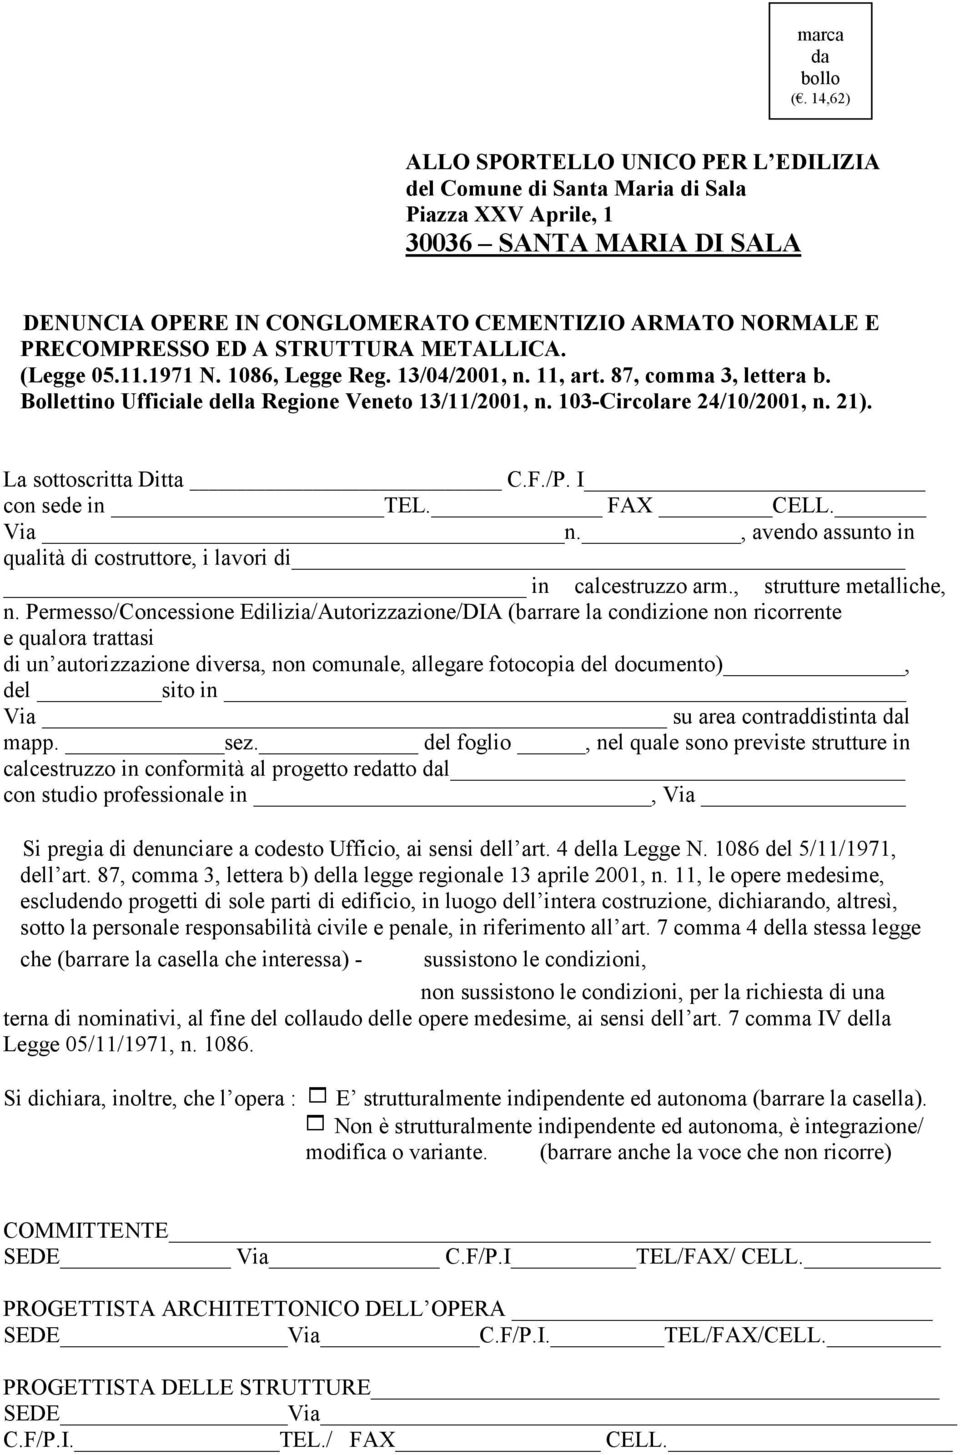 STRUTTURA METALLICA. (Legge 05.11.1971. 1086, Legge Reg. 13/04/2001, n. 11, art. 87, comma 3, lettera b. Bollettino Ufficiale della Regione Veneto 13/11/2001, n. 103-Circolare 24/10/2001, n. 21).